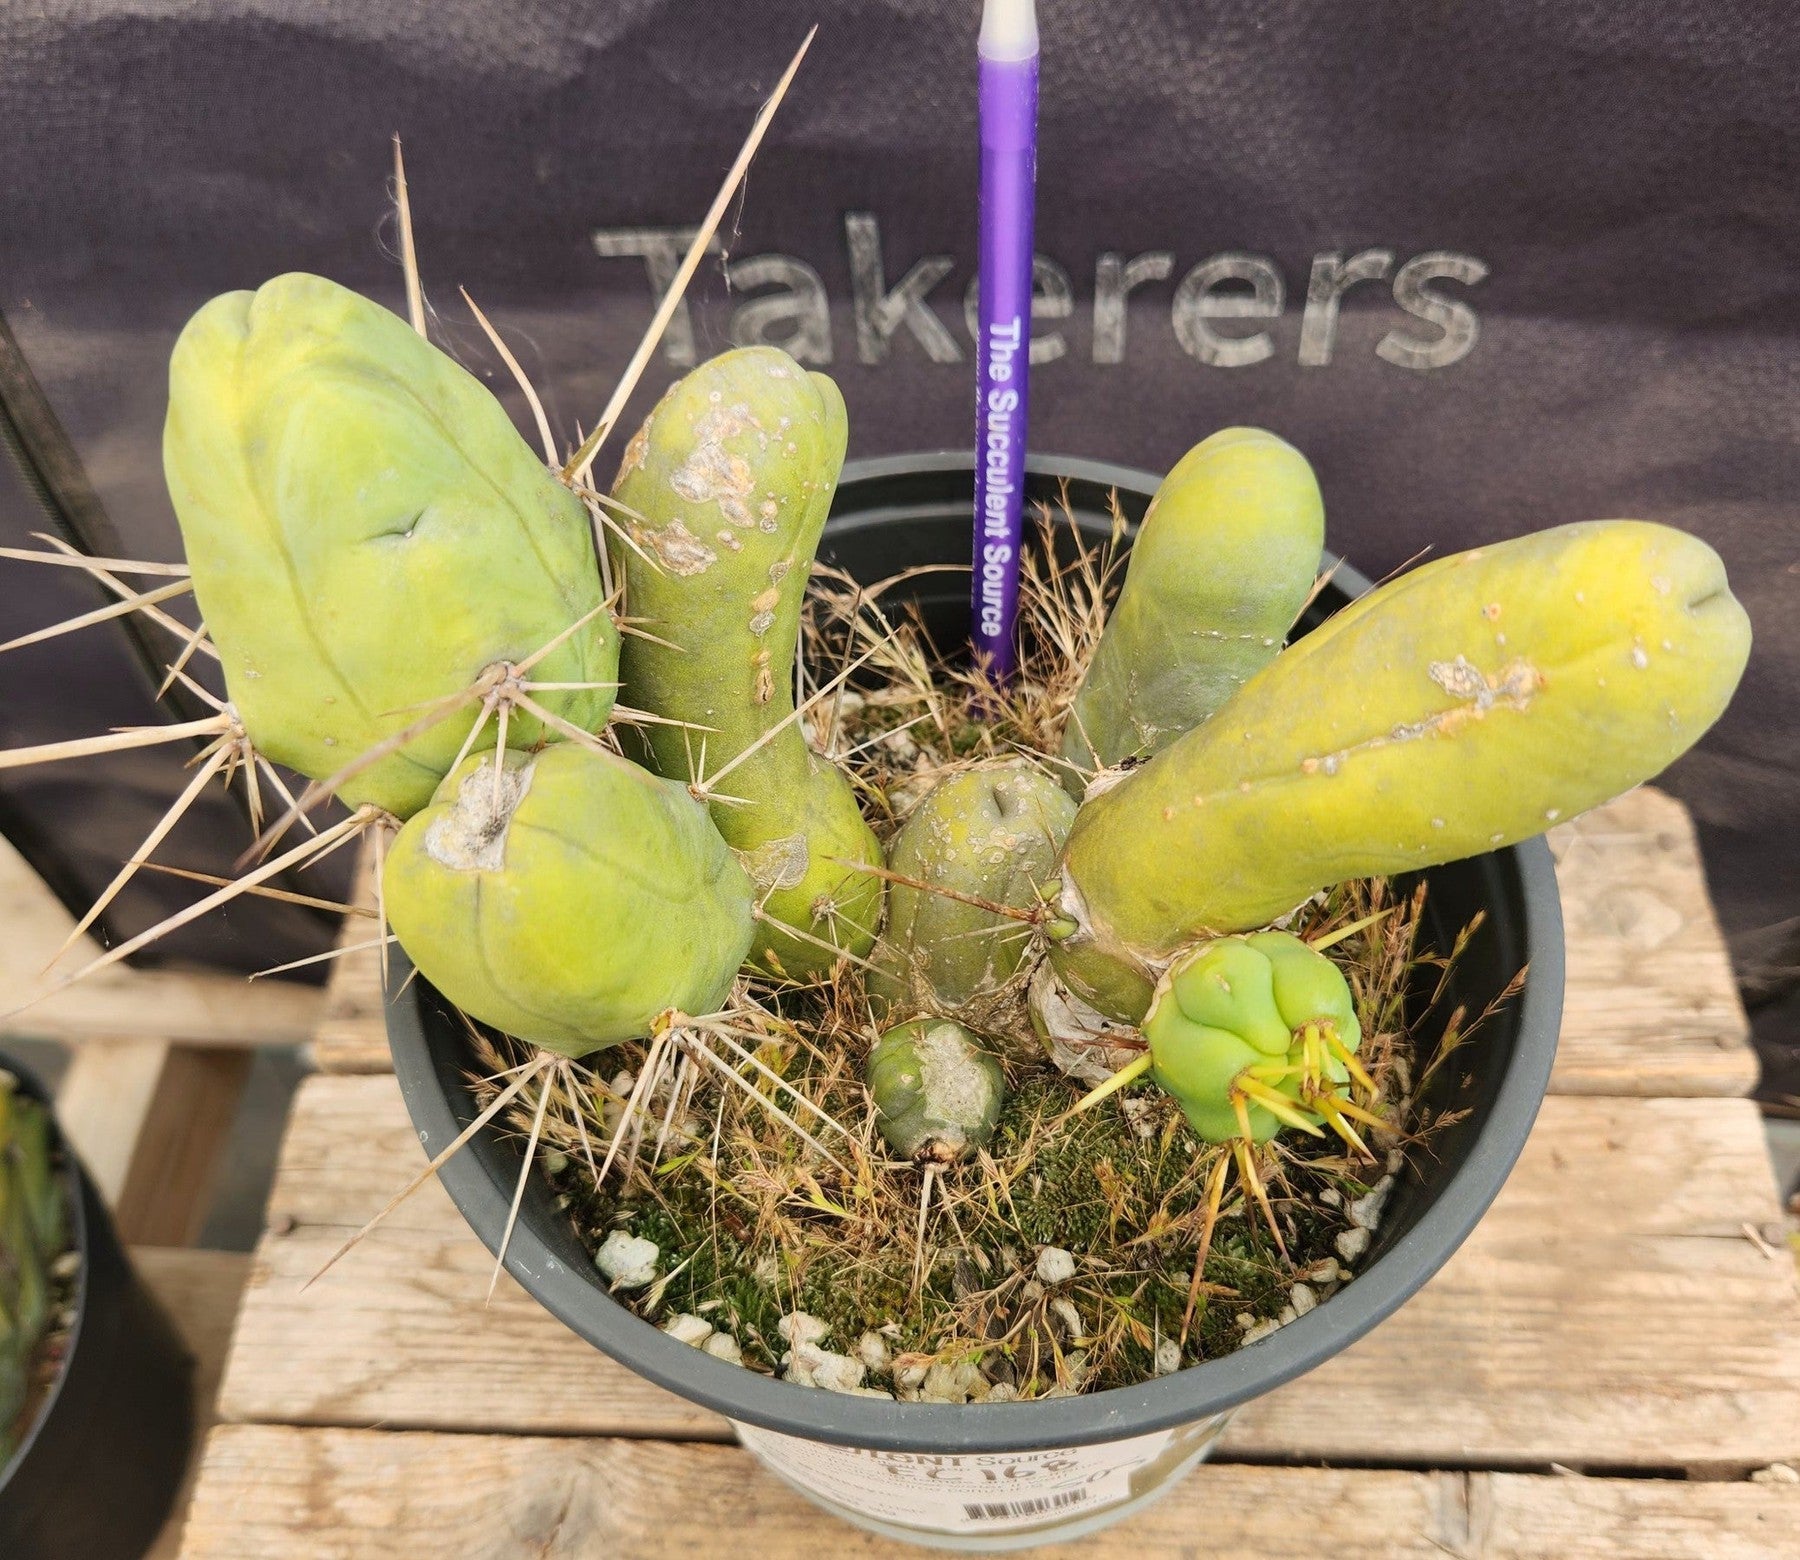 #EC168 EXACT Trichocereus Bridgesii TBM Ornamental Cactus-Cactus - Large - Exact-The Succulent Source